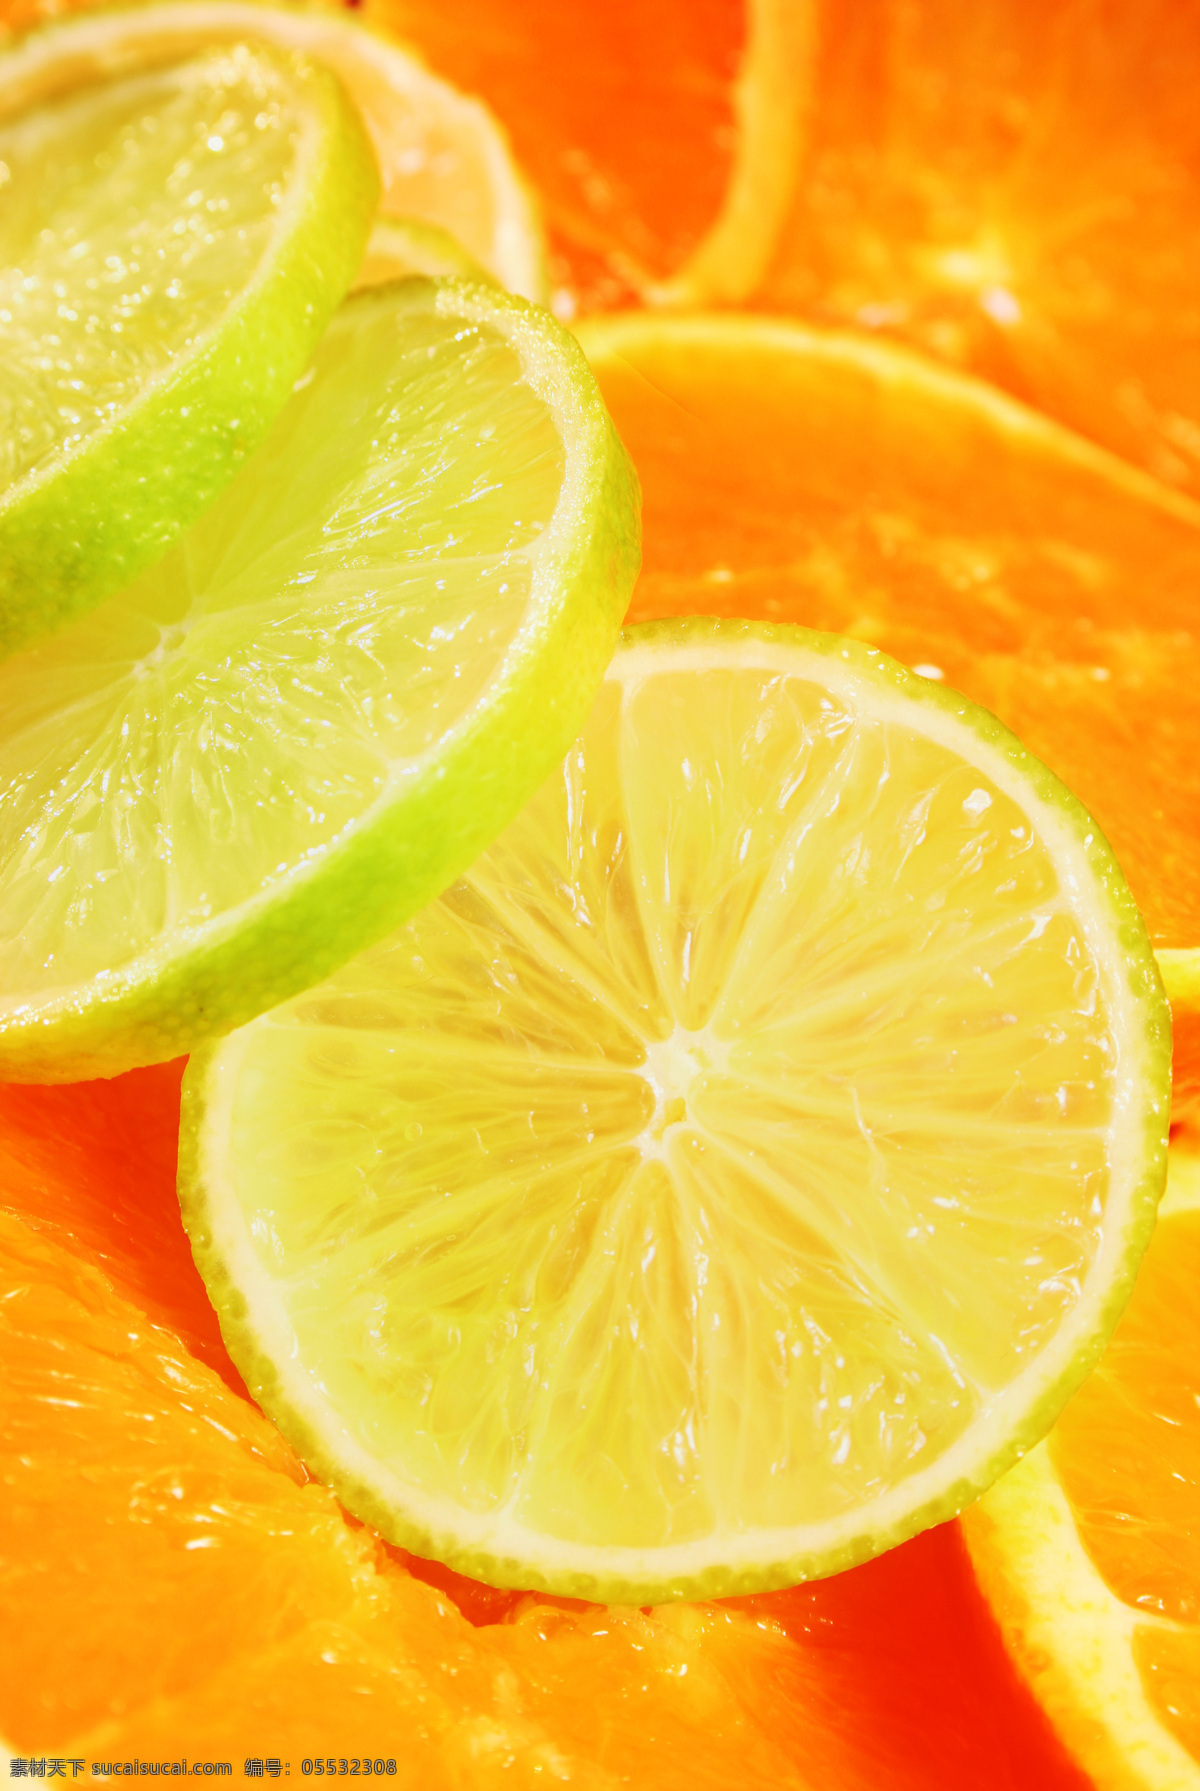 柠檬 片 水果 新鲜水果 橙子 柠檬片 水珠 水滴 背景图片 水果背景 底纹背景 果肉 果粒 蔬菜图片 餐饮美食